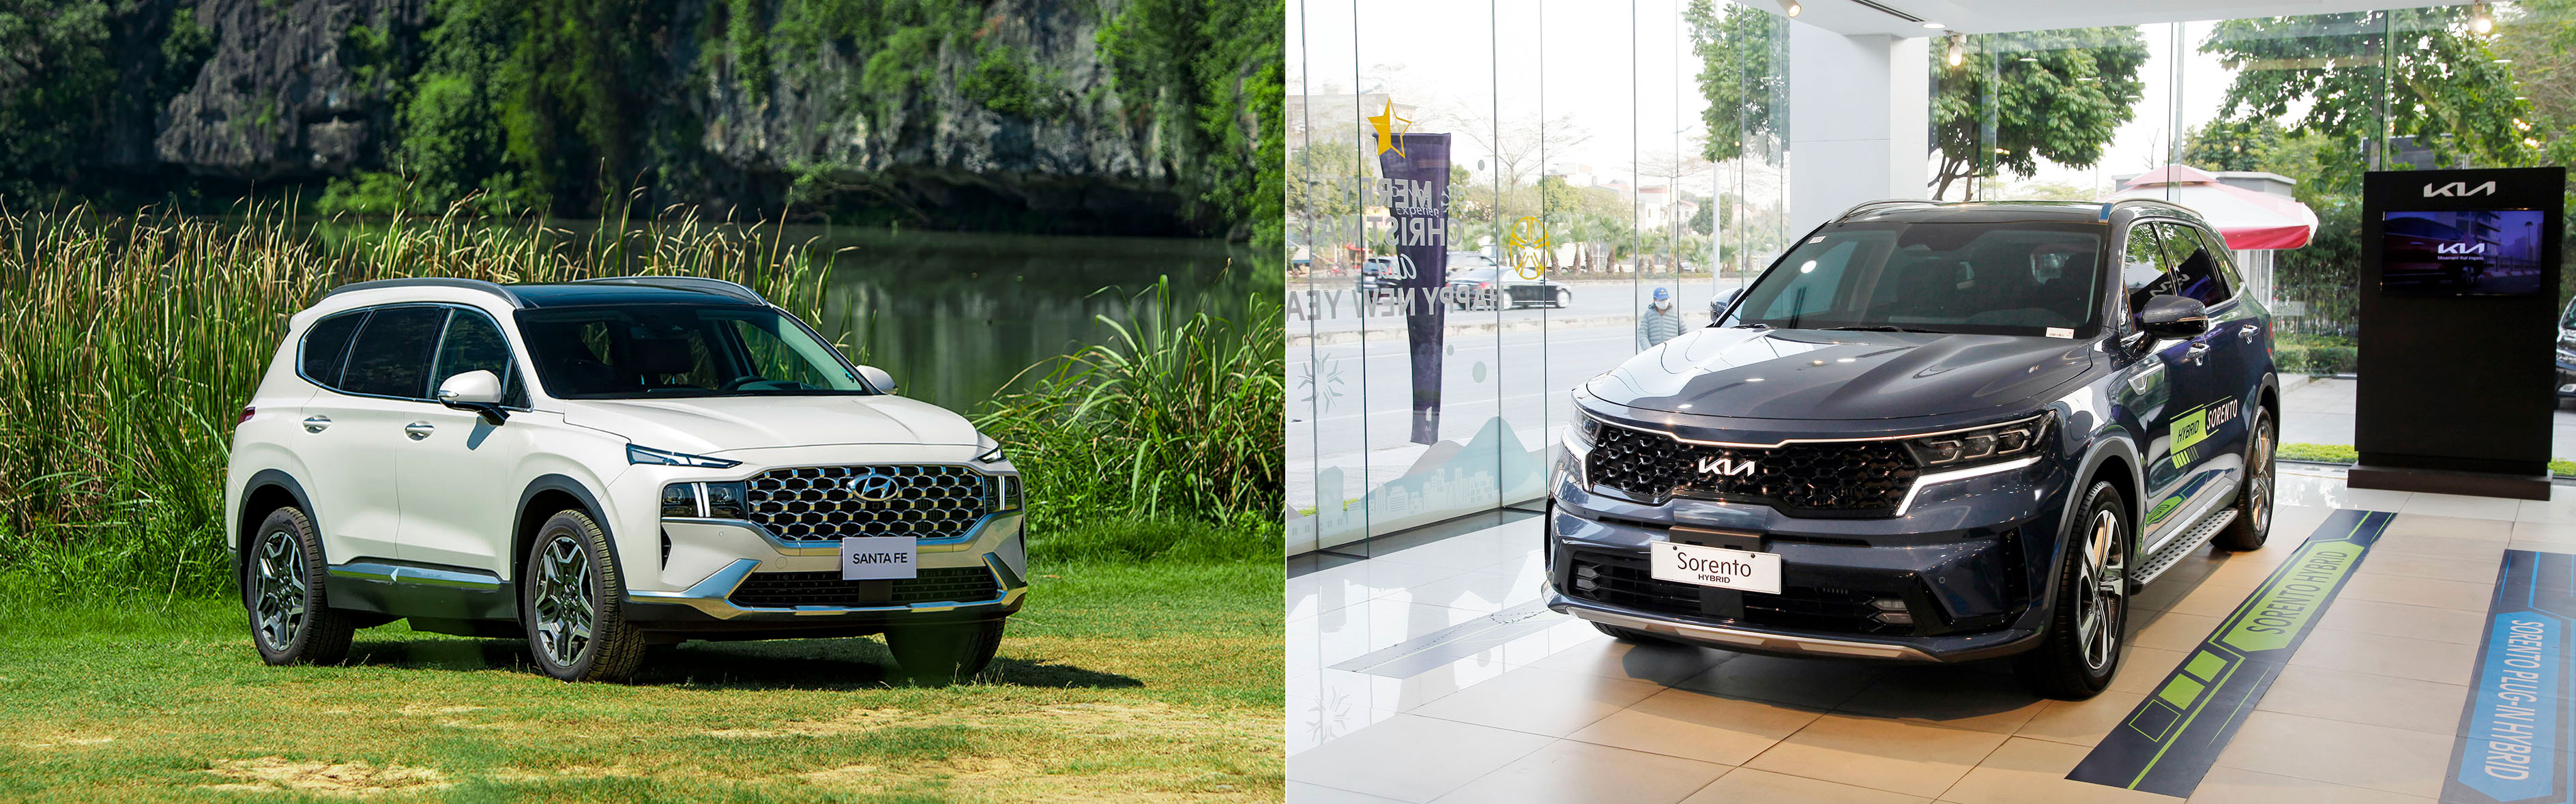 Hyundai Santa Fe Hybrid và KIA Sorento Hybrid: Huynh đệ tương tàn phân khúc xe xanh tại Việt Nam - Ảnh 1.